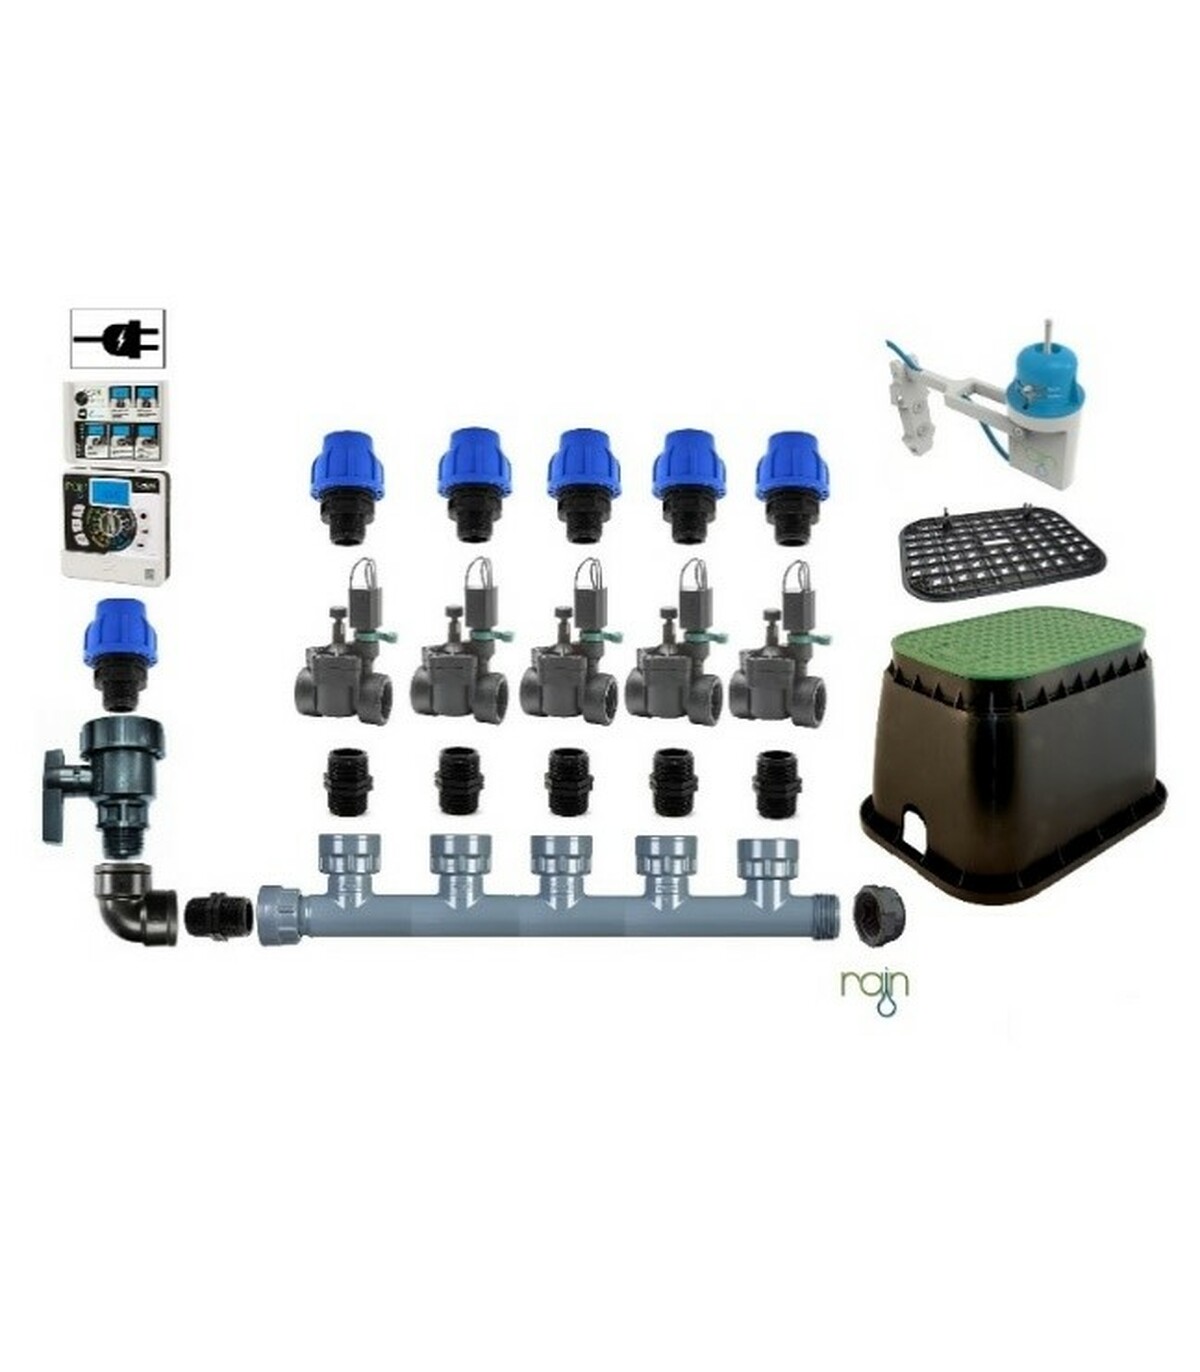 https://digiuliosrl.it/6716-1/kit-rain-con-5-elettrovalvole-24v-programmatore-i-dial-5-zone-pozzetto-sensore-per-irrigazione-automatica-ampliabile.jpg